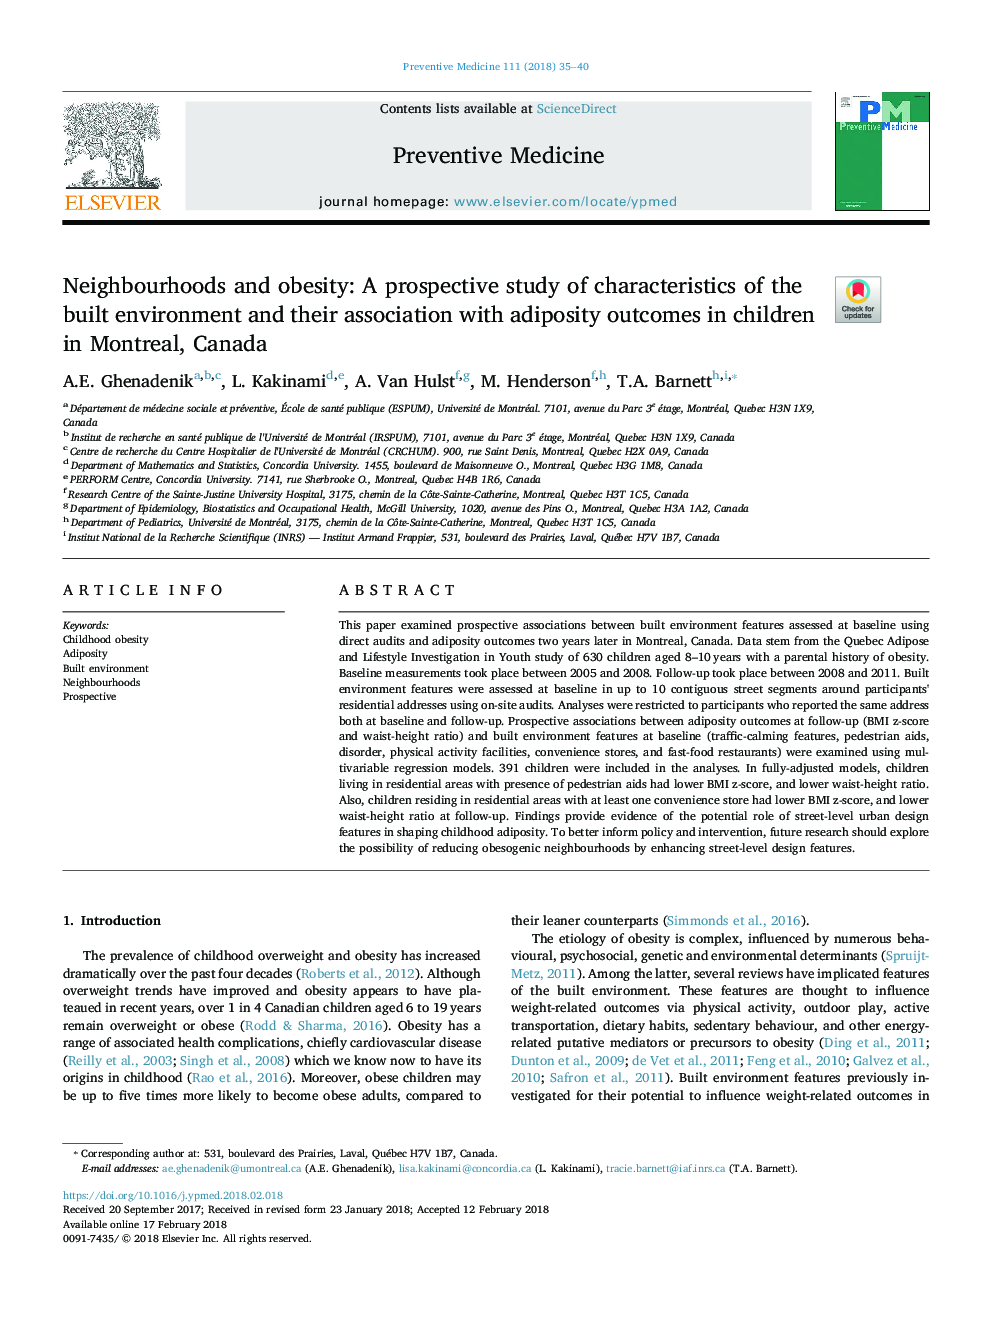 محله ها و چاقی: یک مطالعه آینده نگر از ویژگی های محیط زیست و ارتباط آن با پیامدهای چاقی در کودکان در مونترال، کانادا 